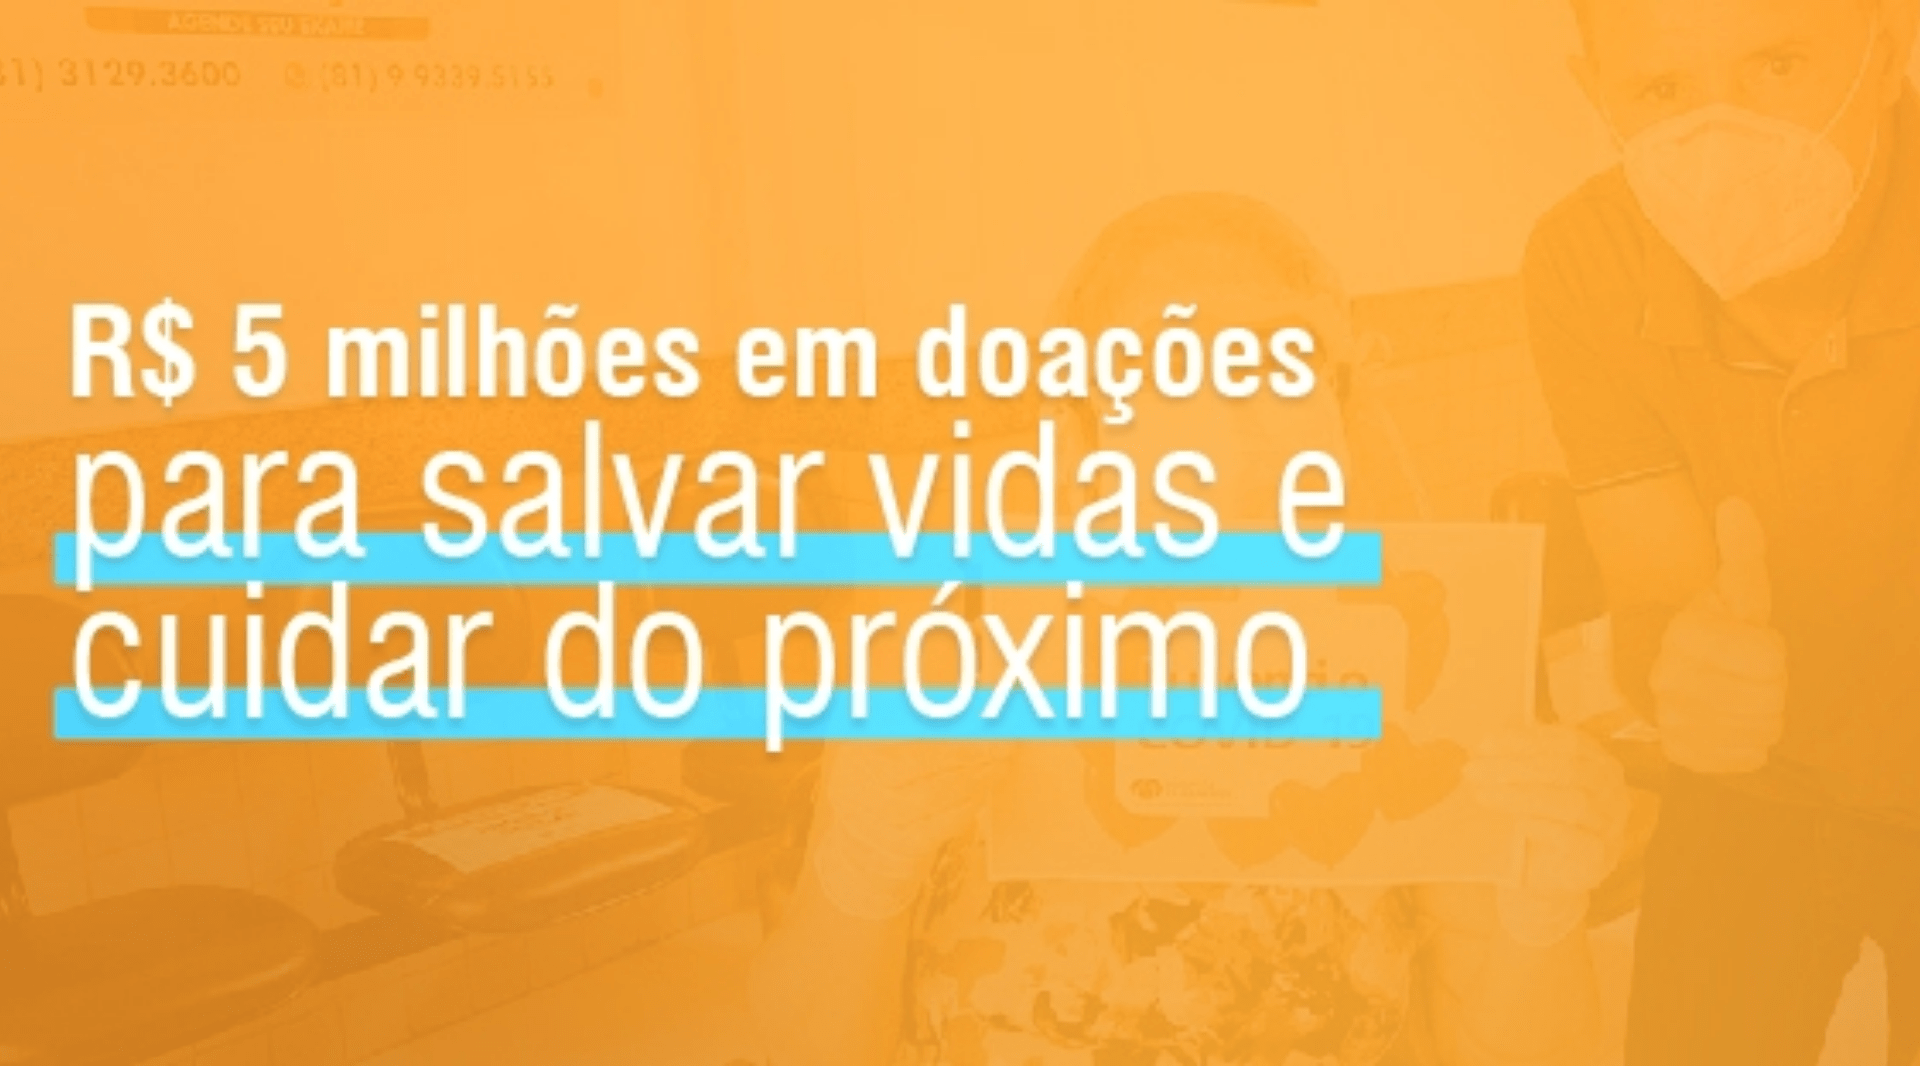 MV destina mais de R$ 5 milhões para combater a crise gerada pela pandemia no Brasil